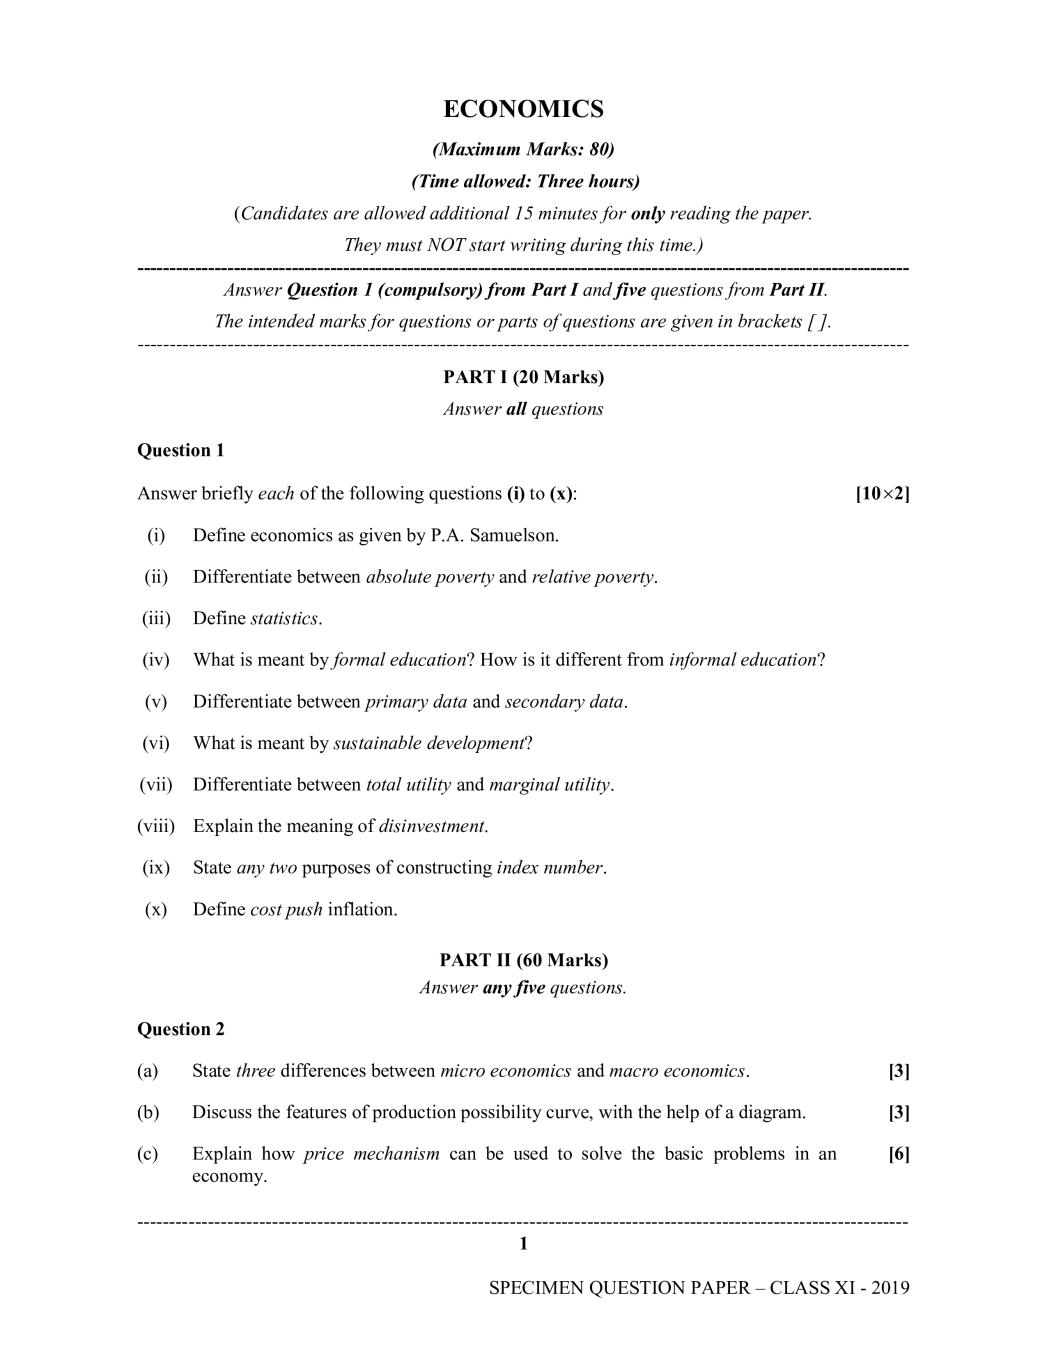 ISC Class 11 Specimen Paper for Economics - Page 1